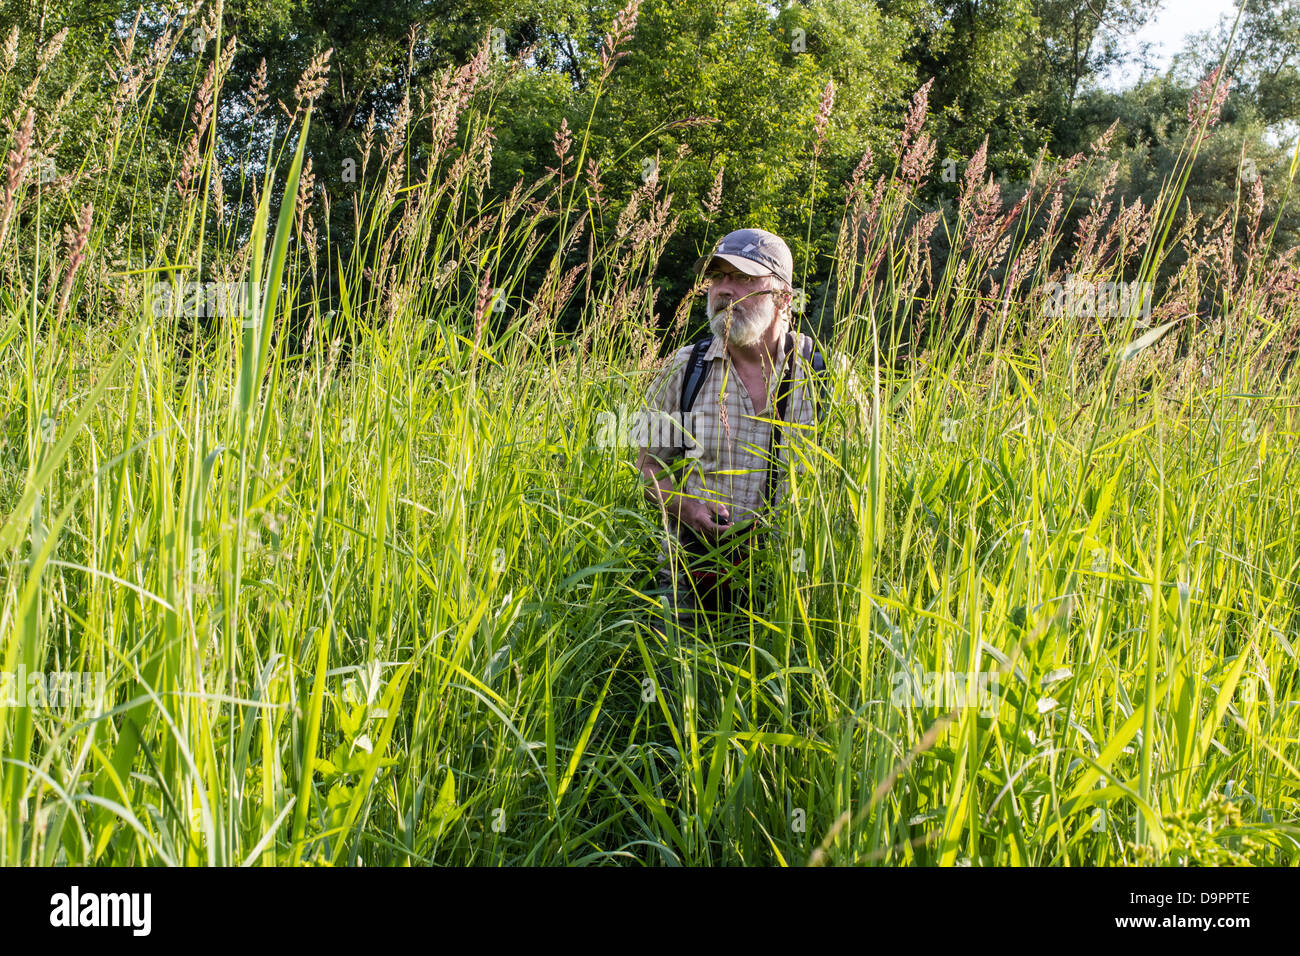 Calamagrostis Arundinacea oder Reed Grass. Der Mann in dem hohen Rasen auf einer Sommerwiese Stockfoto